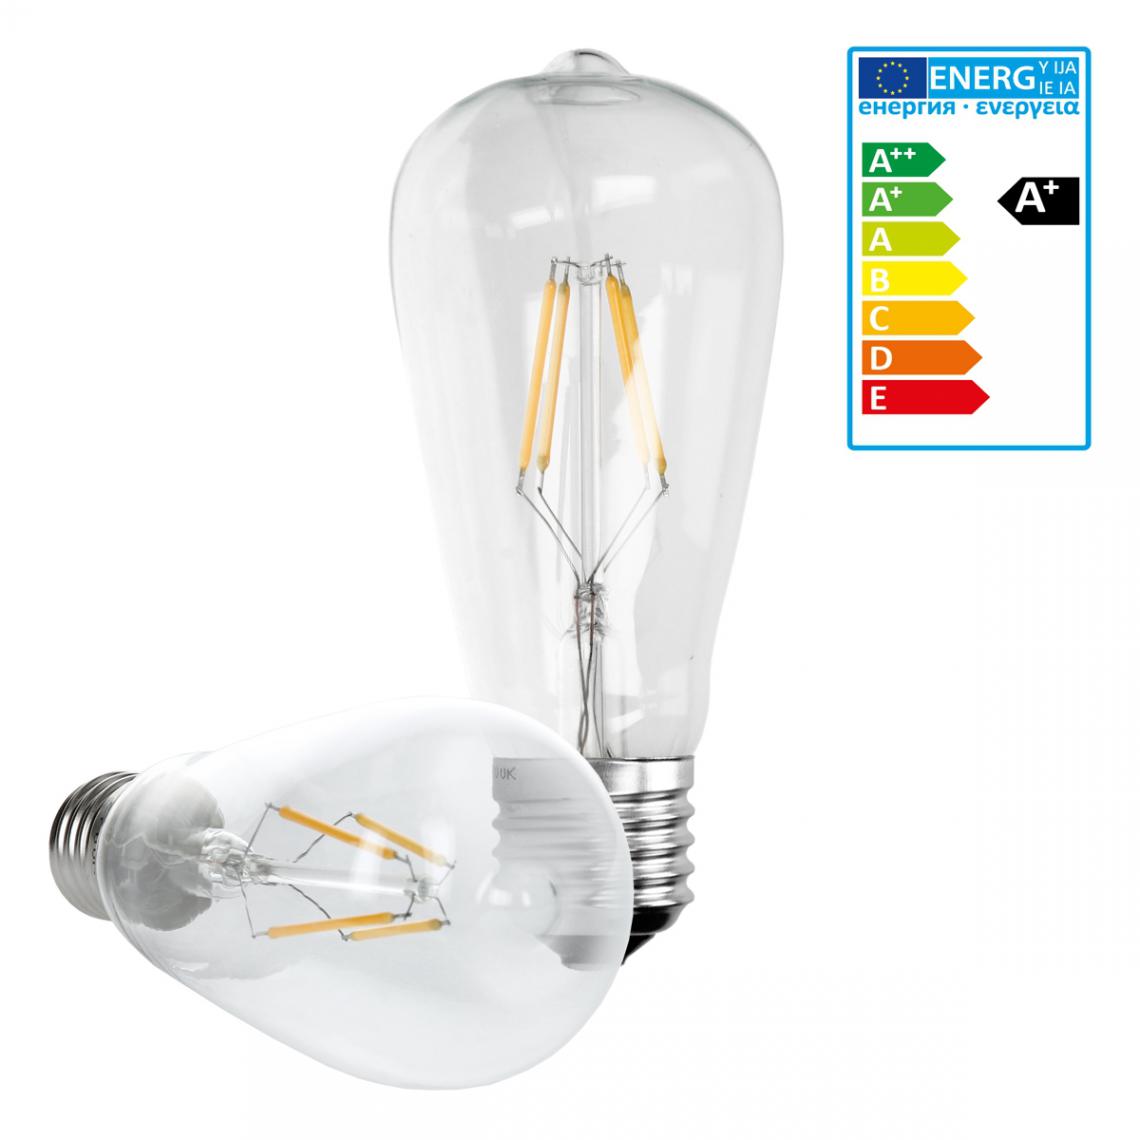 Ecd Germany - ECD Germany 5 x LED Filament de l'ampoule E27 classique Edison 4W 408 lumens Angle de 120° AC 220-240 reste caché et remplace 20W lampe incandescente blanc chaud - Ampoules LED